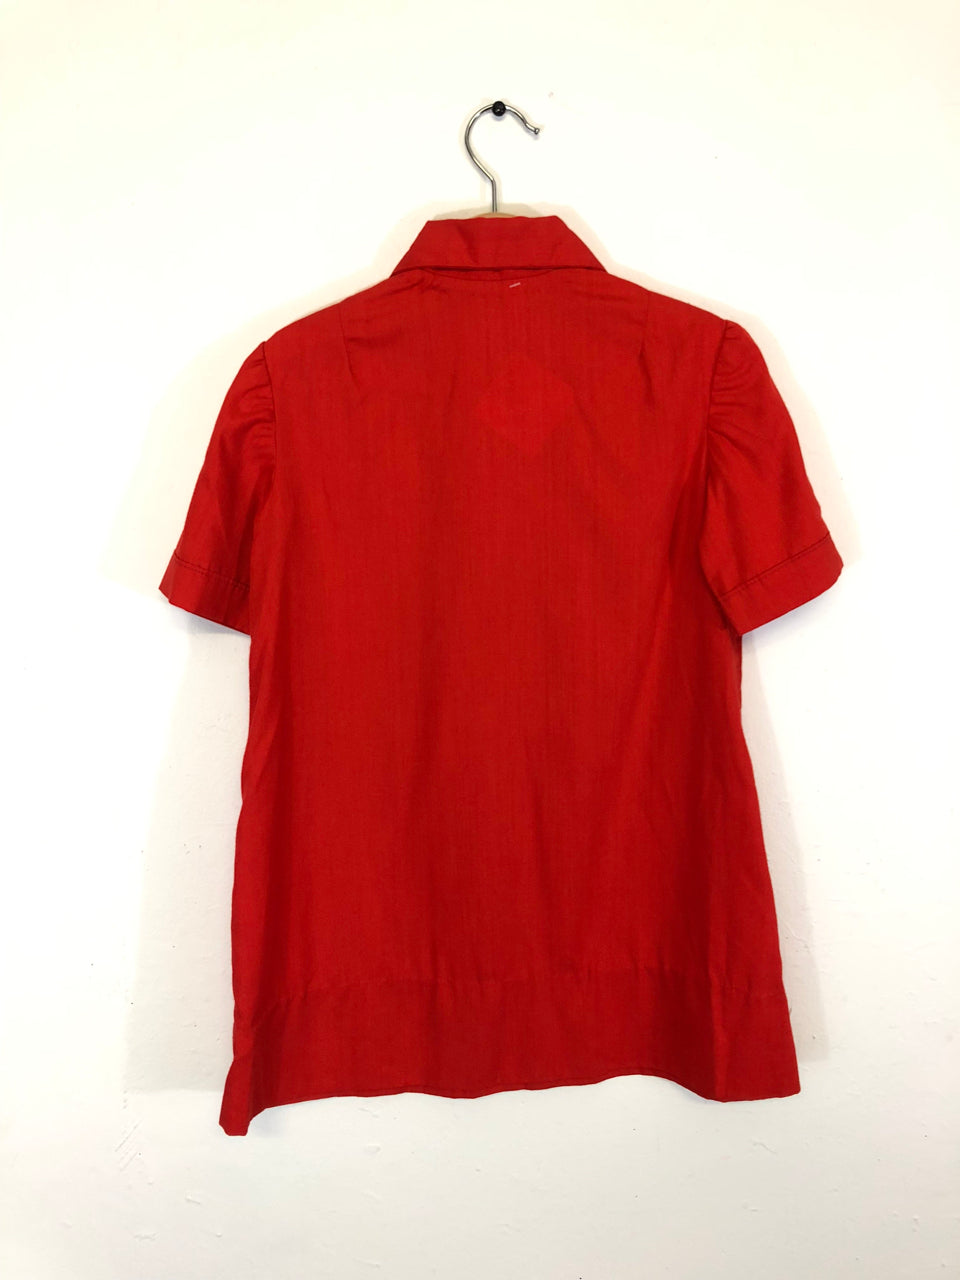 Kids' Red Buttoned Shirt/Dress